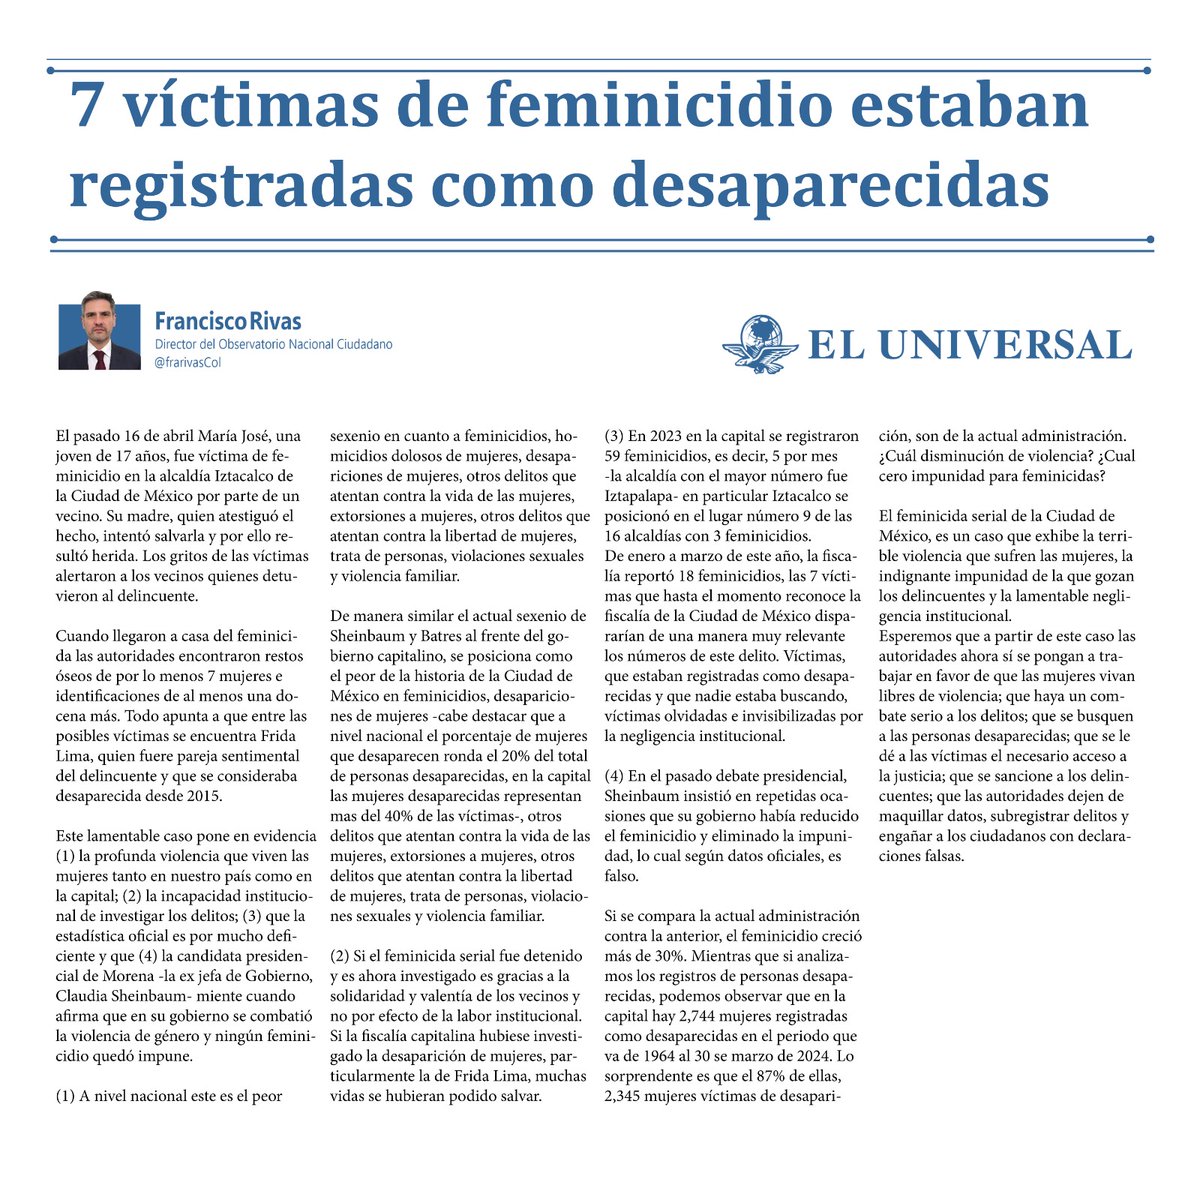 El feminicida serial de la Ciudad de México, es un caso que exhibe la terrible violencia que sufren las mujeres, la indignante impunidad de la que gozan los delincuentes y la lamentable negligencia institucional. @ObsNalCiudadano @Univ_Opinion t.ly/AU8L2